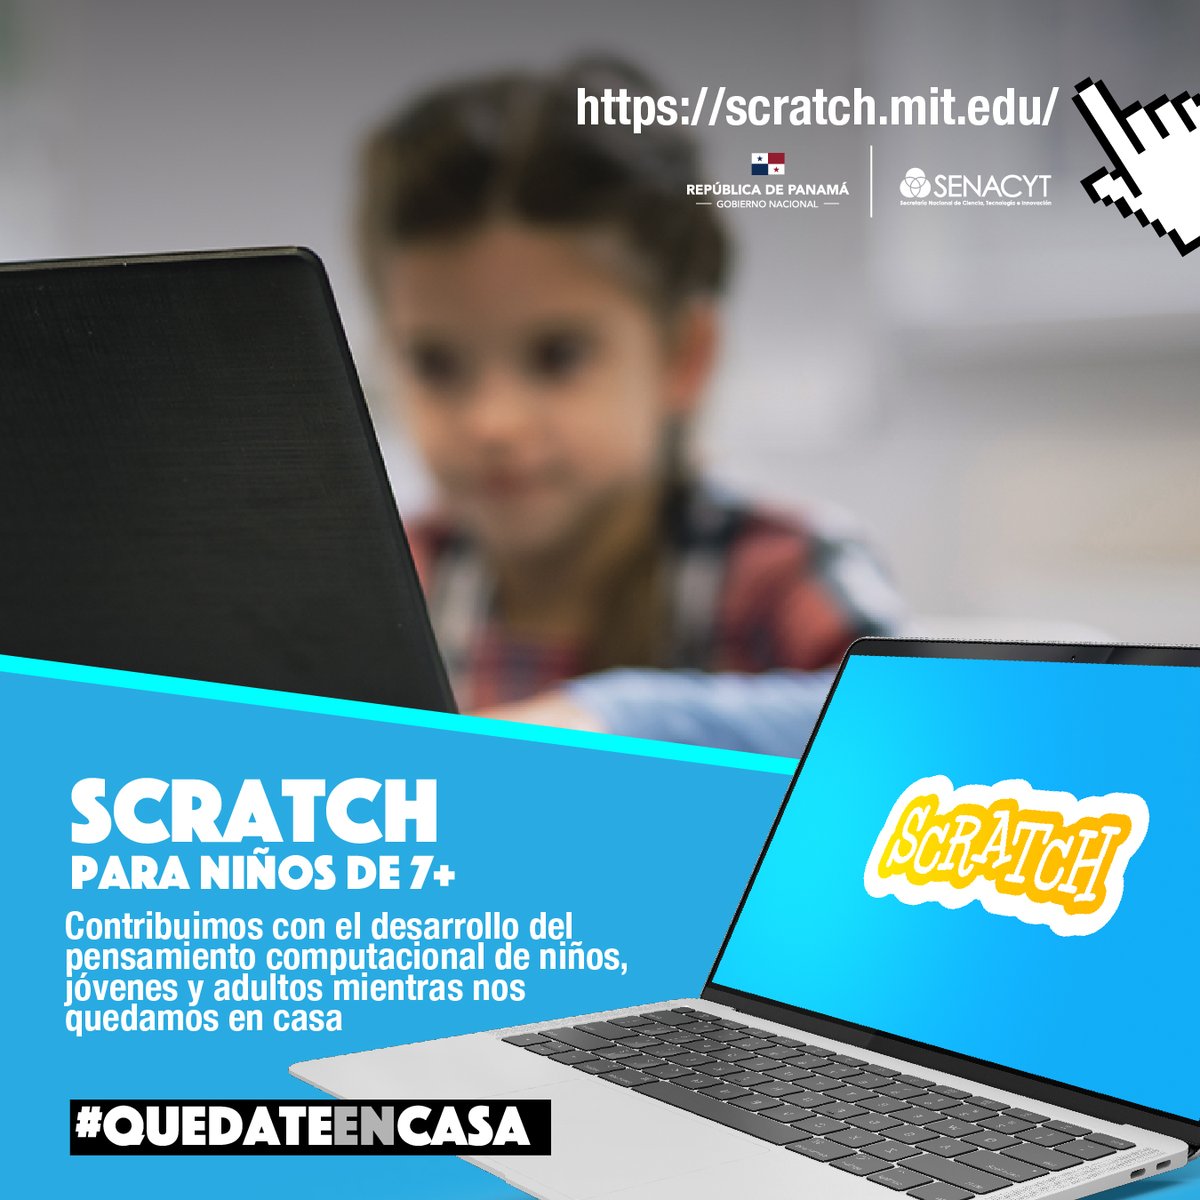 #QuédateEnCasa Los invitamos a visitar scratch.mit.edu #Scratch para niños de 7 años en adelante y así contribuir en el desarrollo del pensamiento computacional mientras nos quedamos en casa.
#ProtégetePanamá #UnidosLoHacemos
#HoraDelCódigo  #Yopuedoprogramar #Panamá